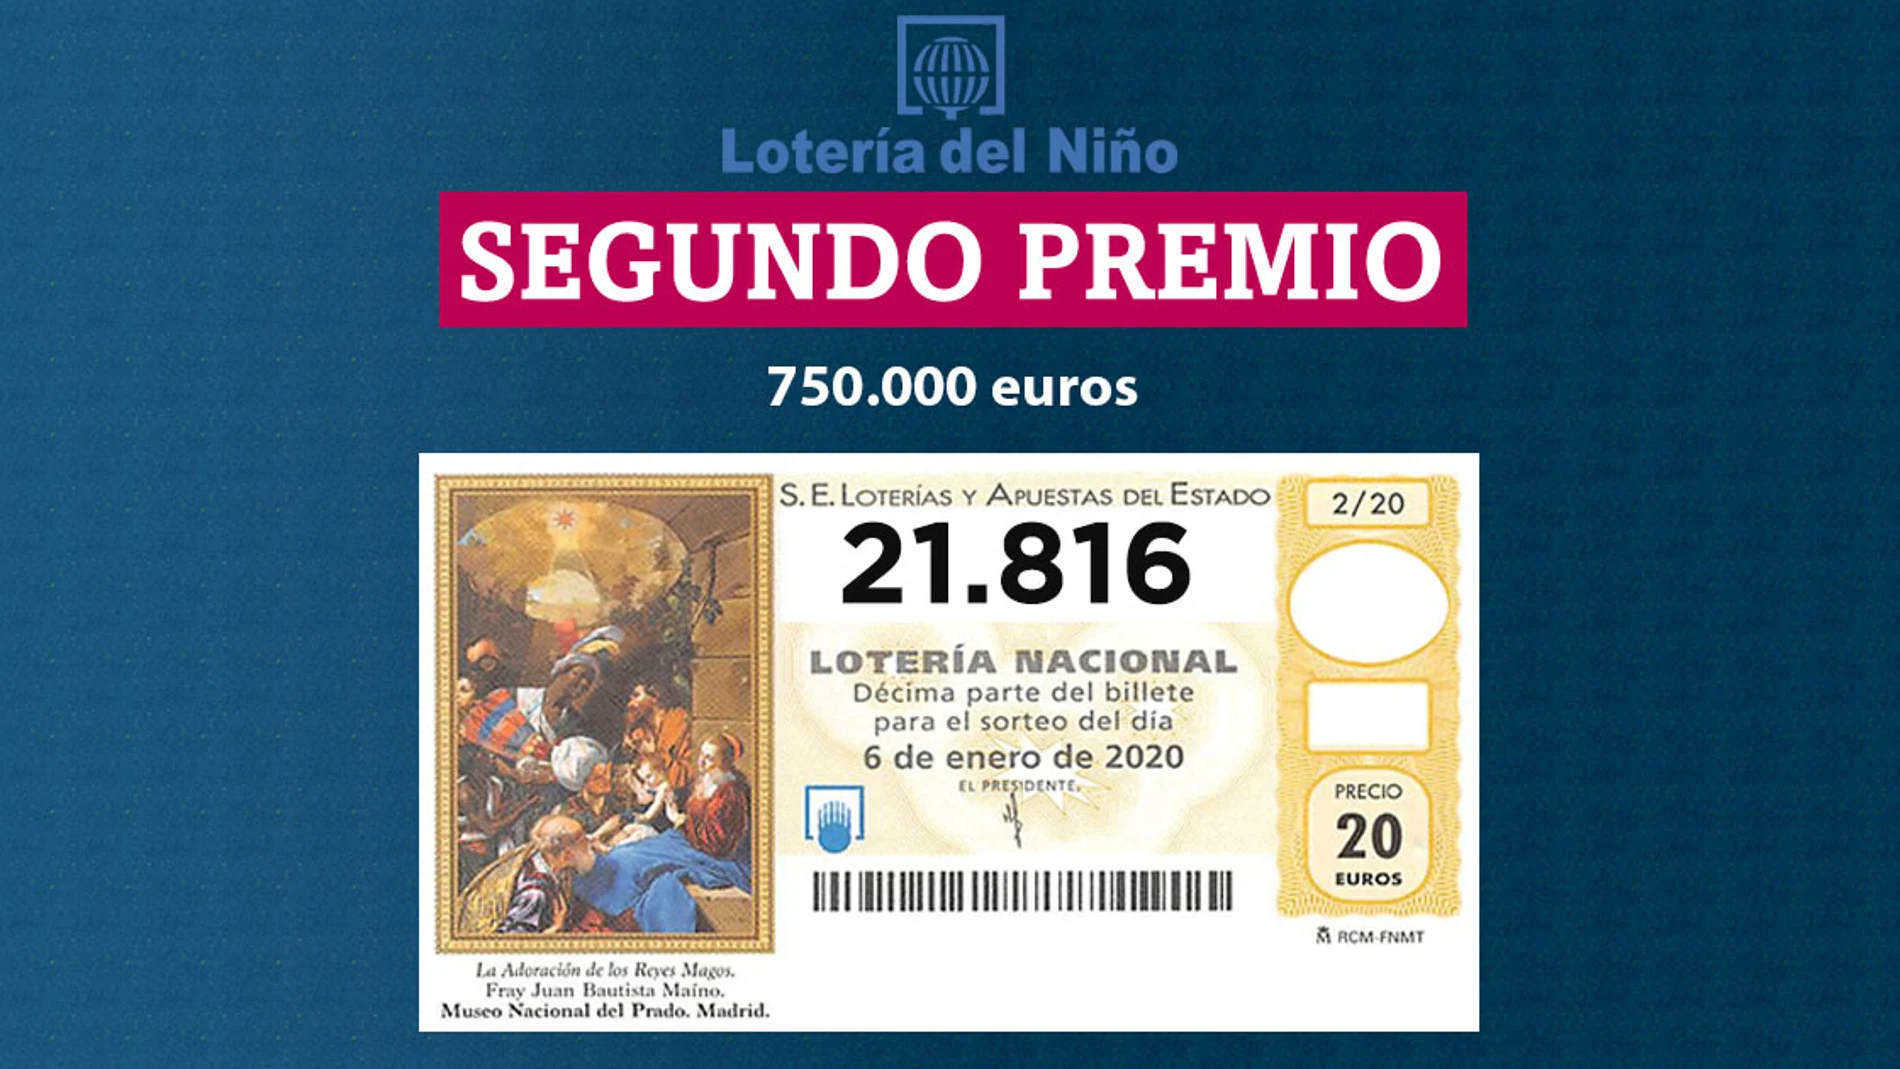 Segundo premio del sorteo de la Lotería del Niño 2020